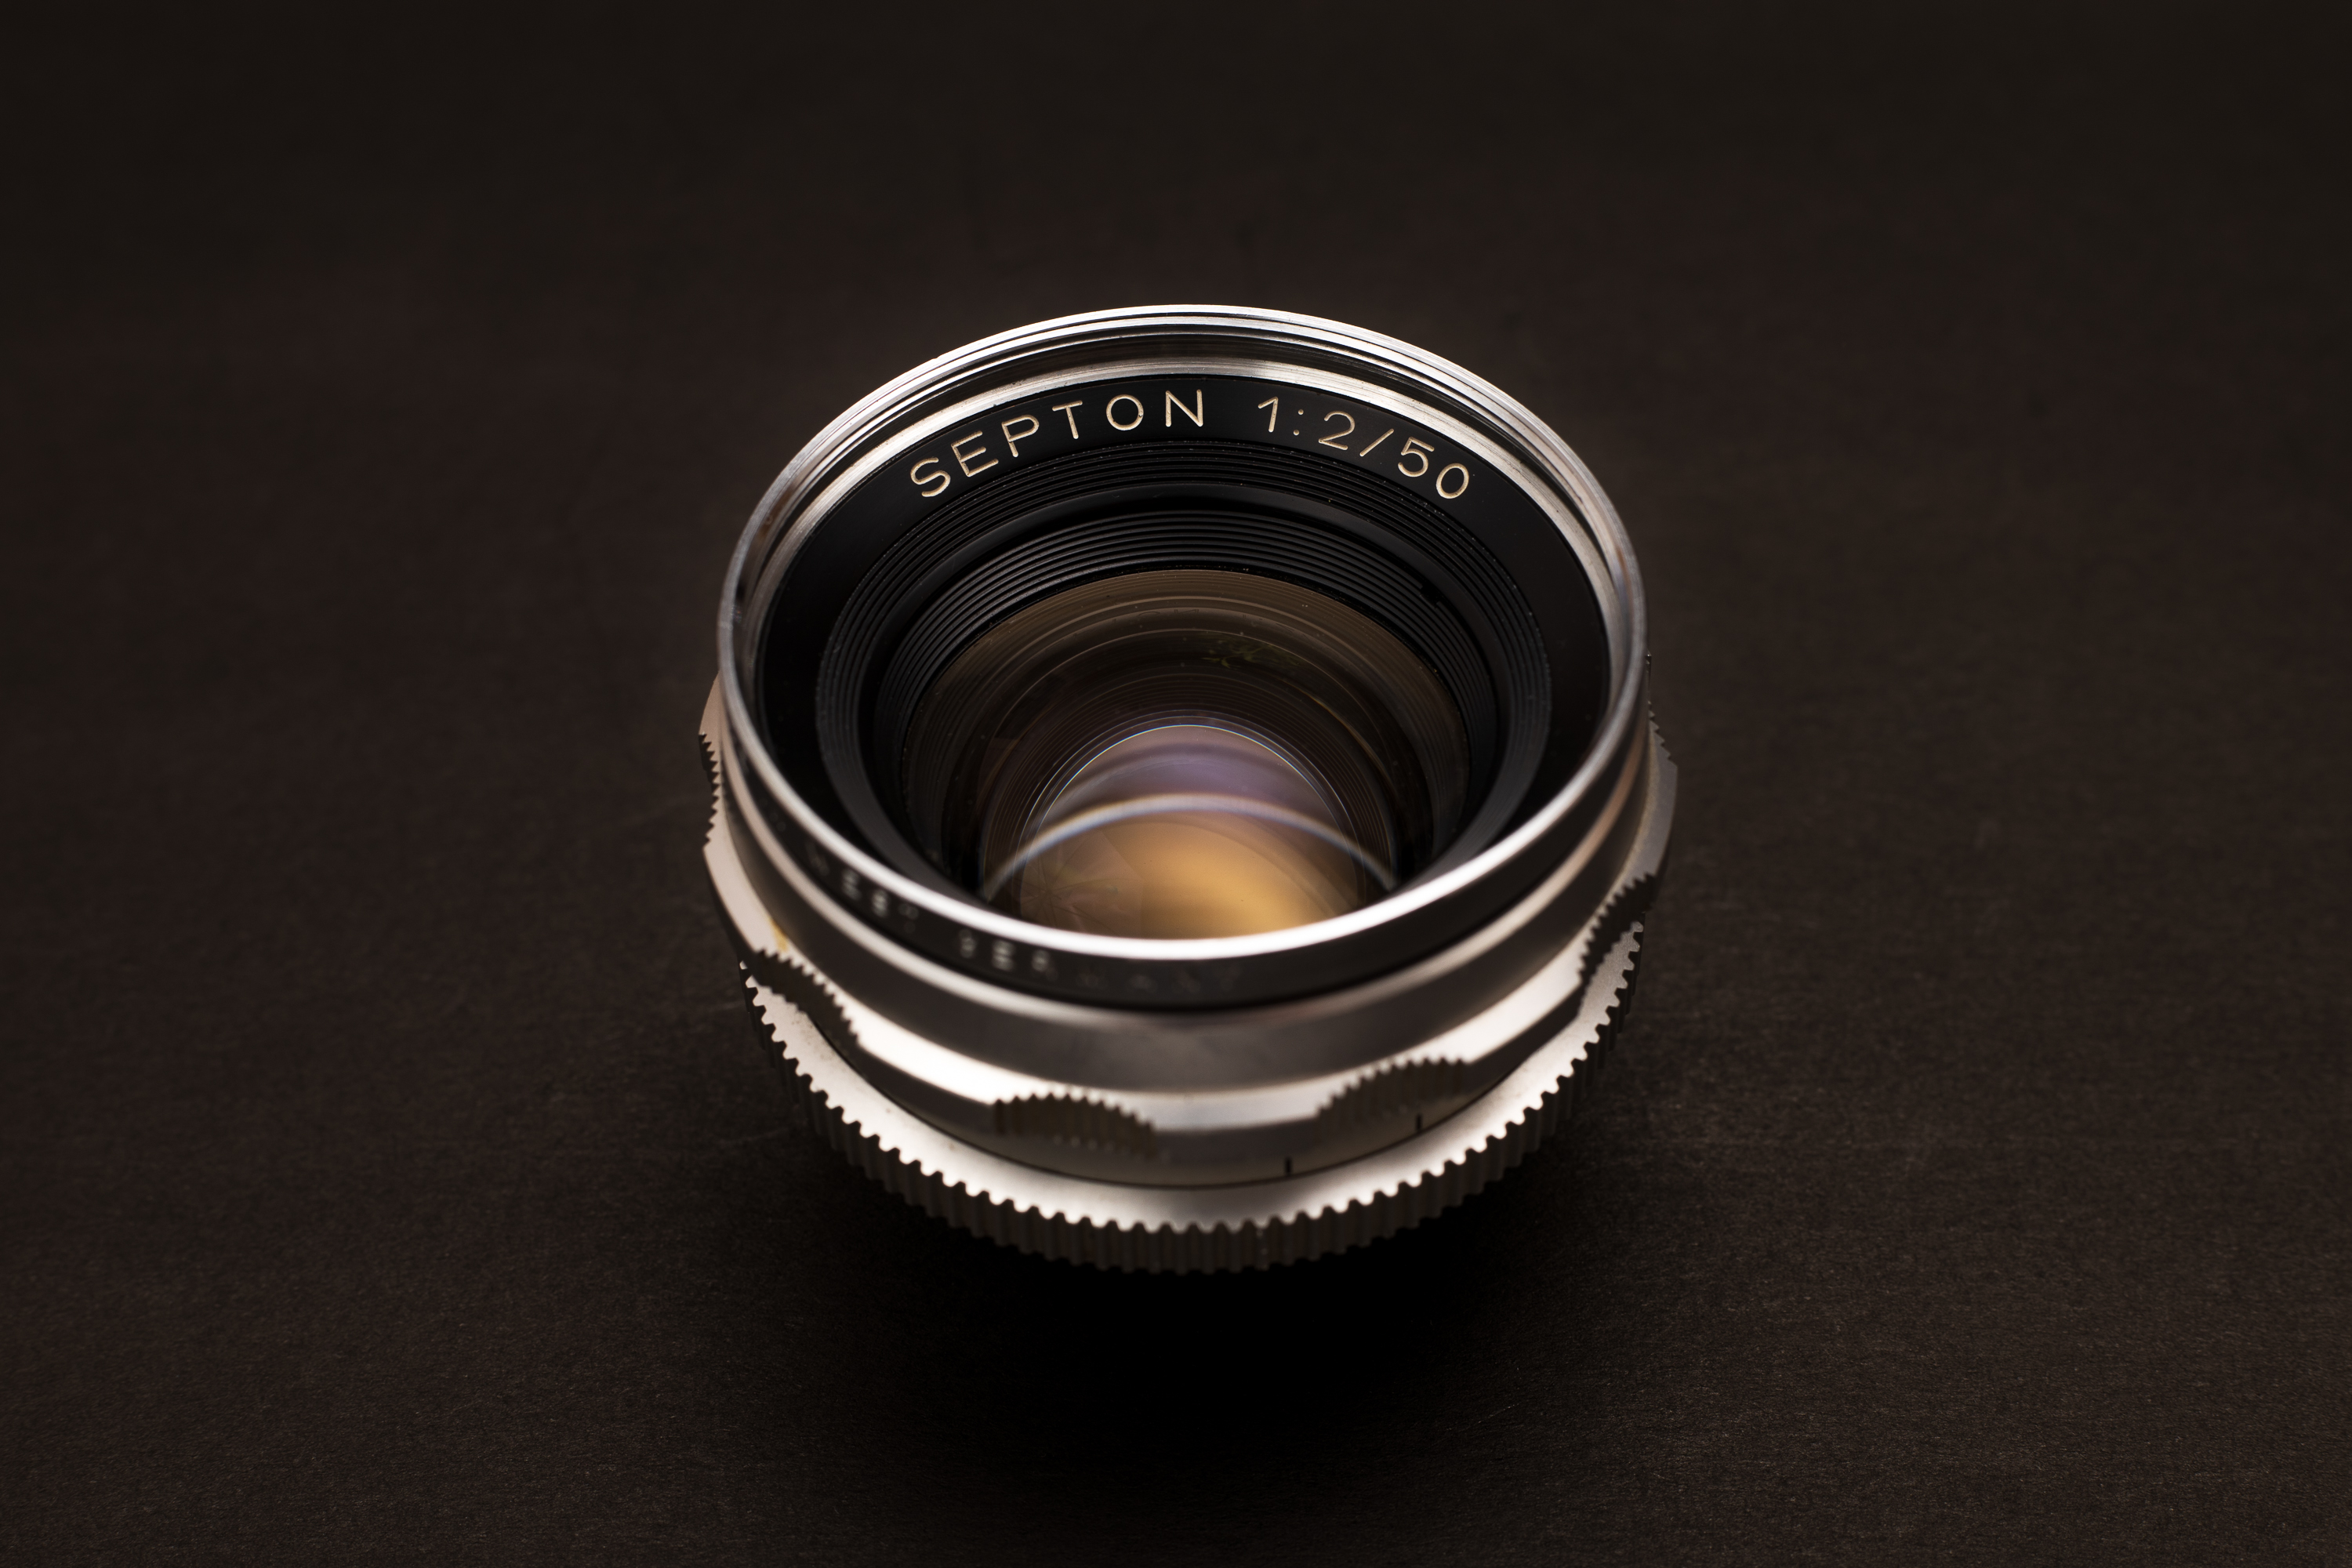 Voigtländer Septon 50mm f2 Lens Review - Lens Legend